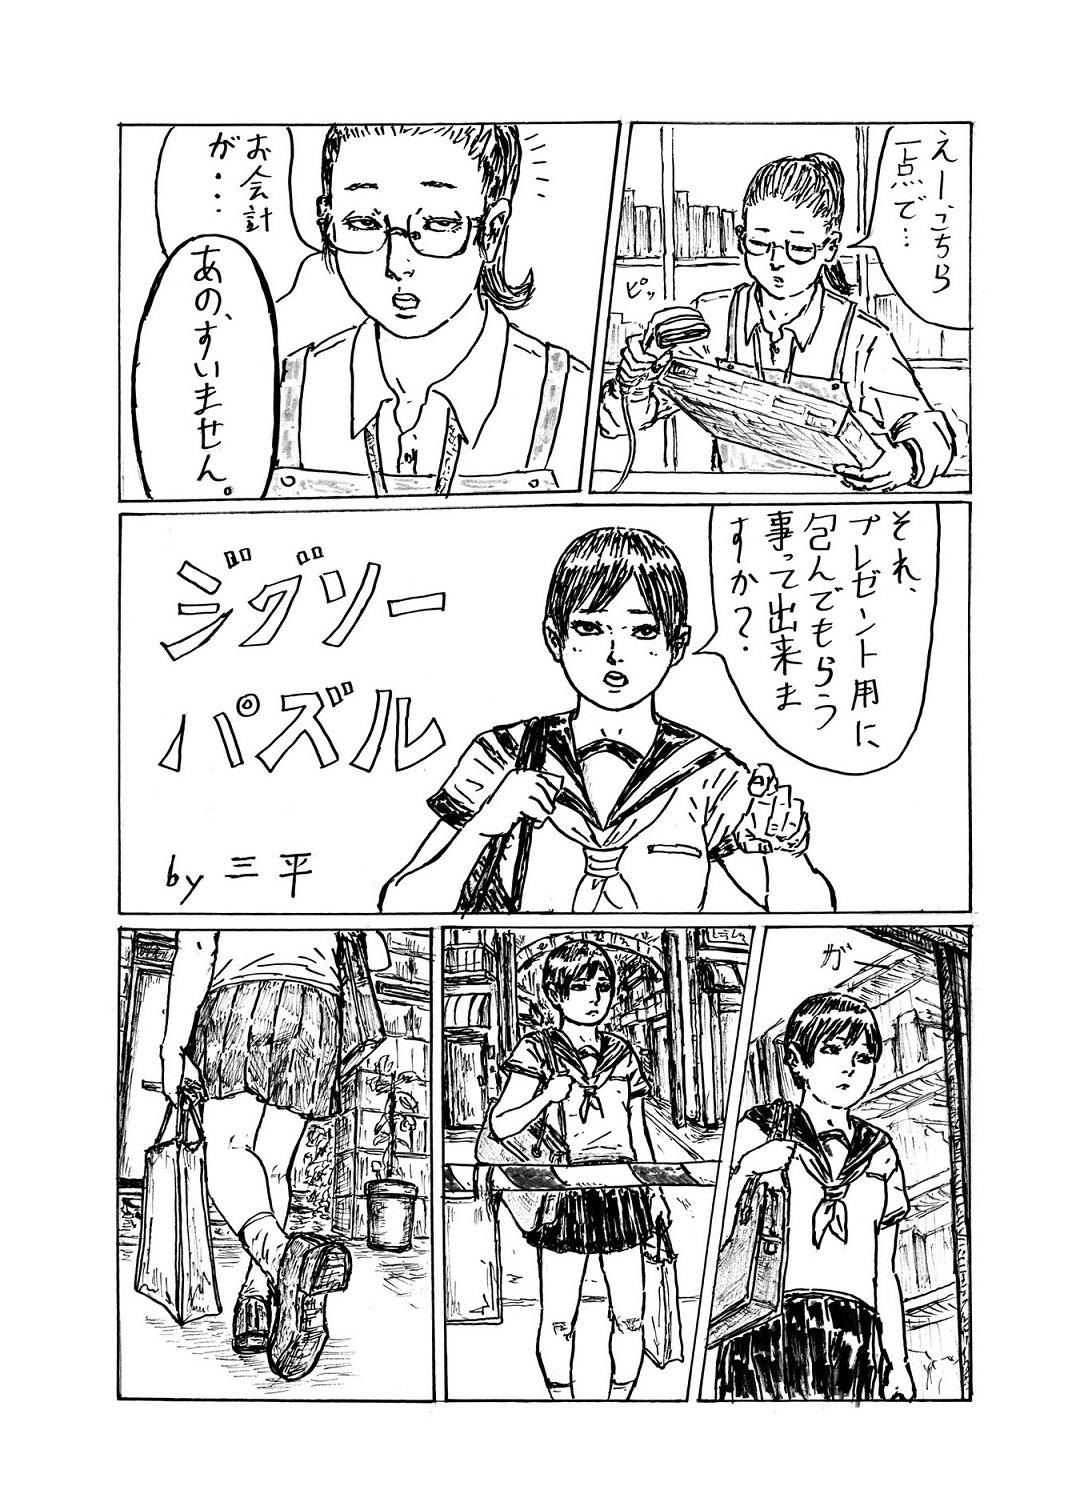 第18回ストーリー漫画の部 一般大賞「ジグソーパズル」三平さんの作品